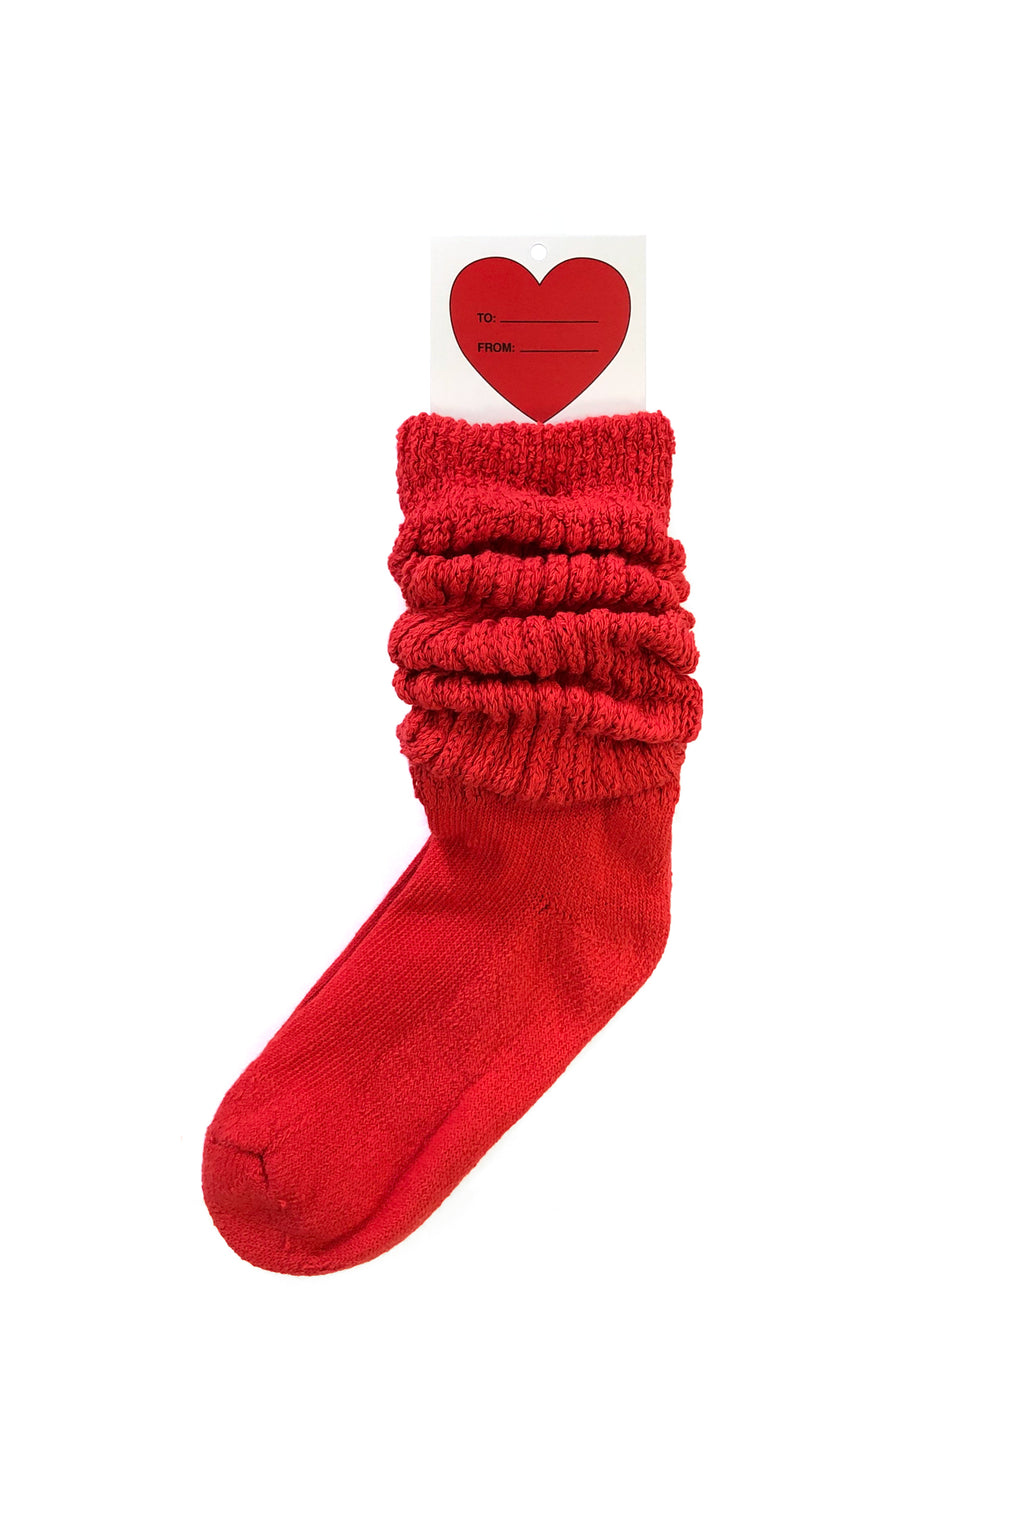 V-Day Slouch Socks, Red